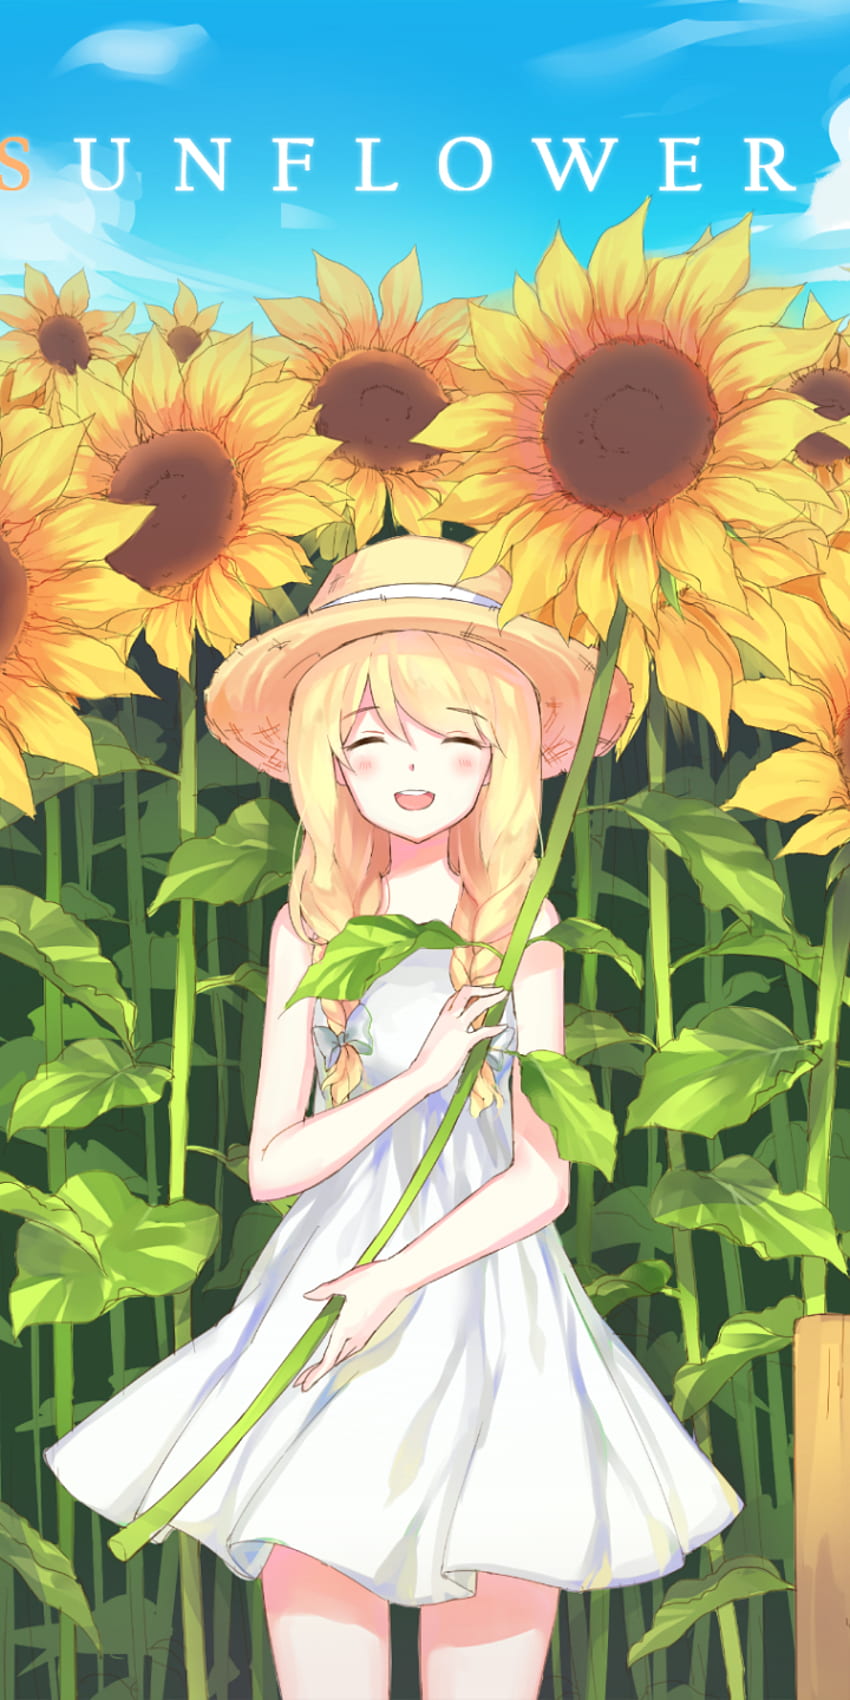 cute anime girl in sunflower field